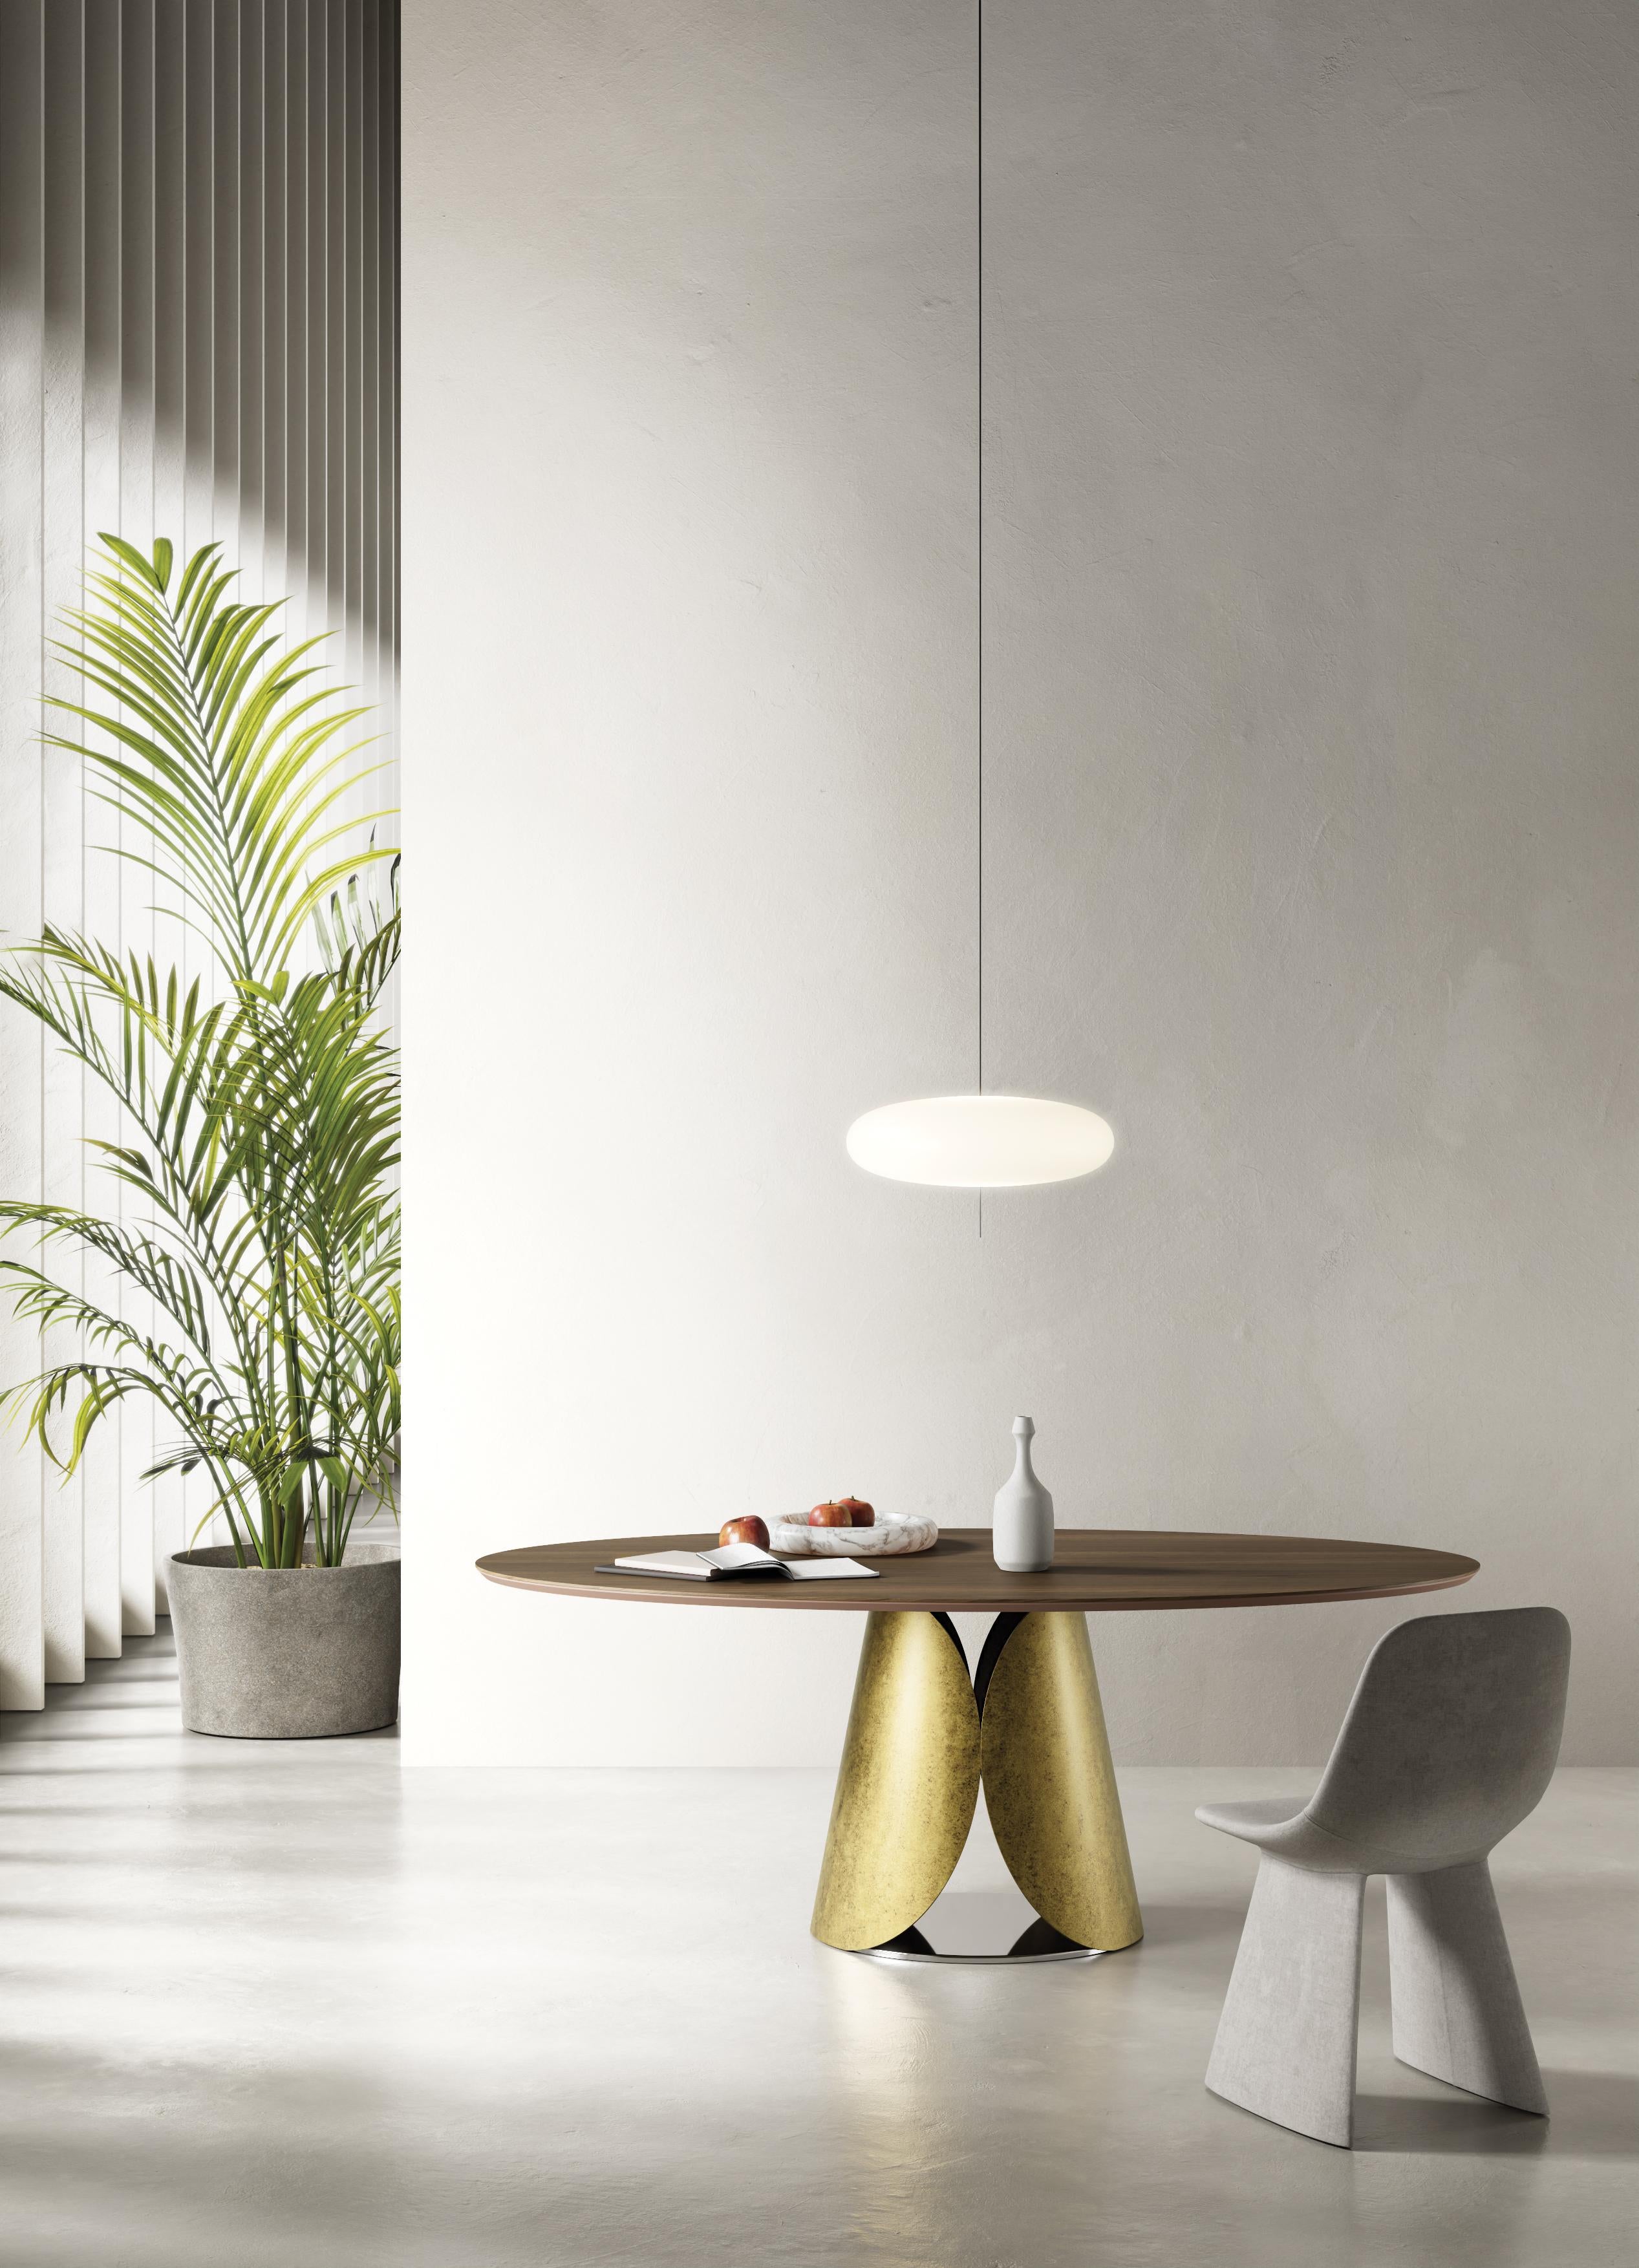 Post-Modern Estia Allungabile Dining Table by Chinellato Design For Sale